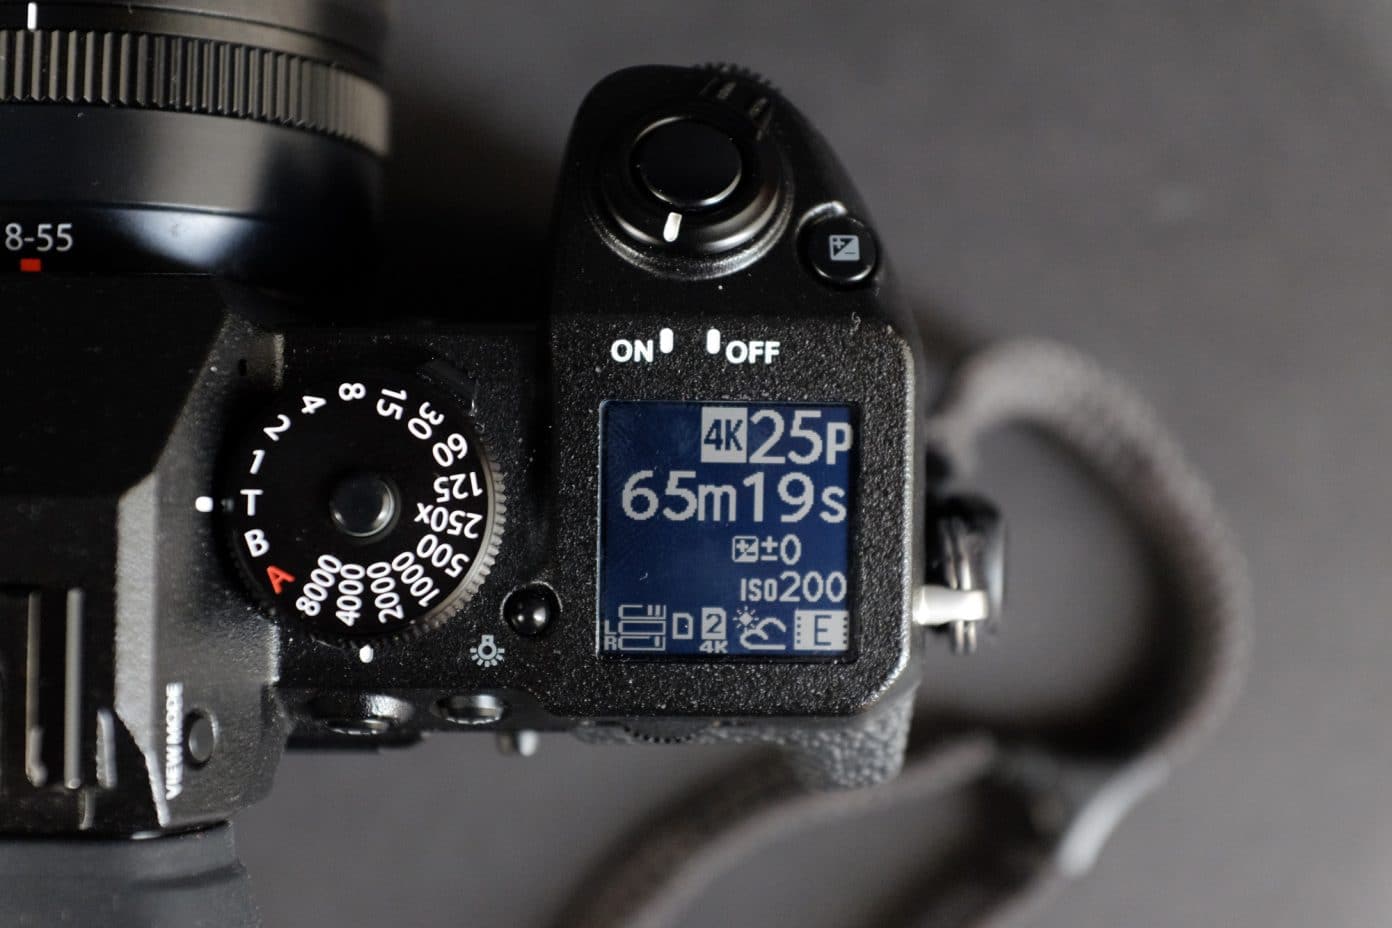 Fujifilm thông báo sự kiến X Summit trong tháng 5 với thế hệ máy ảnh X Series mới